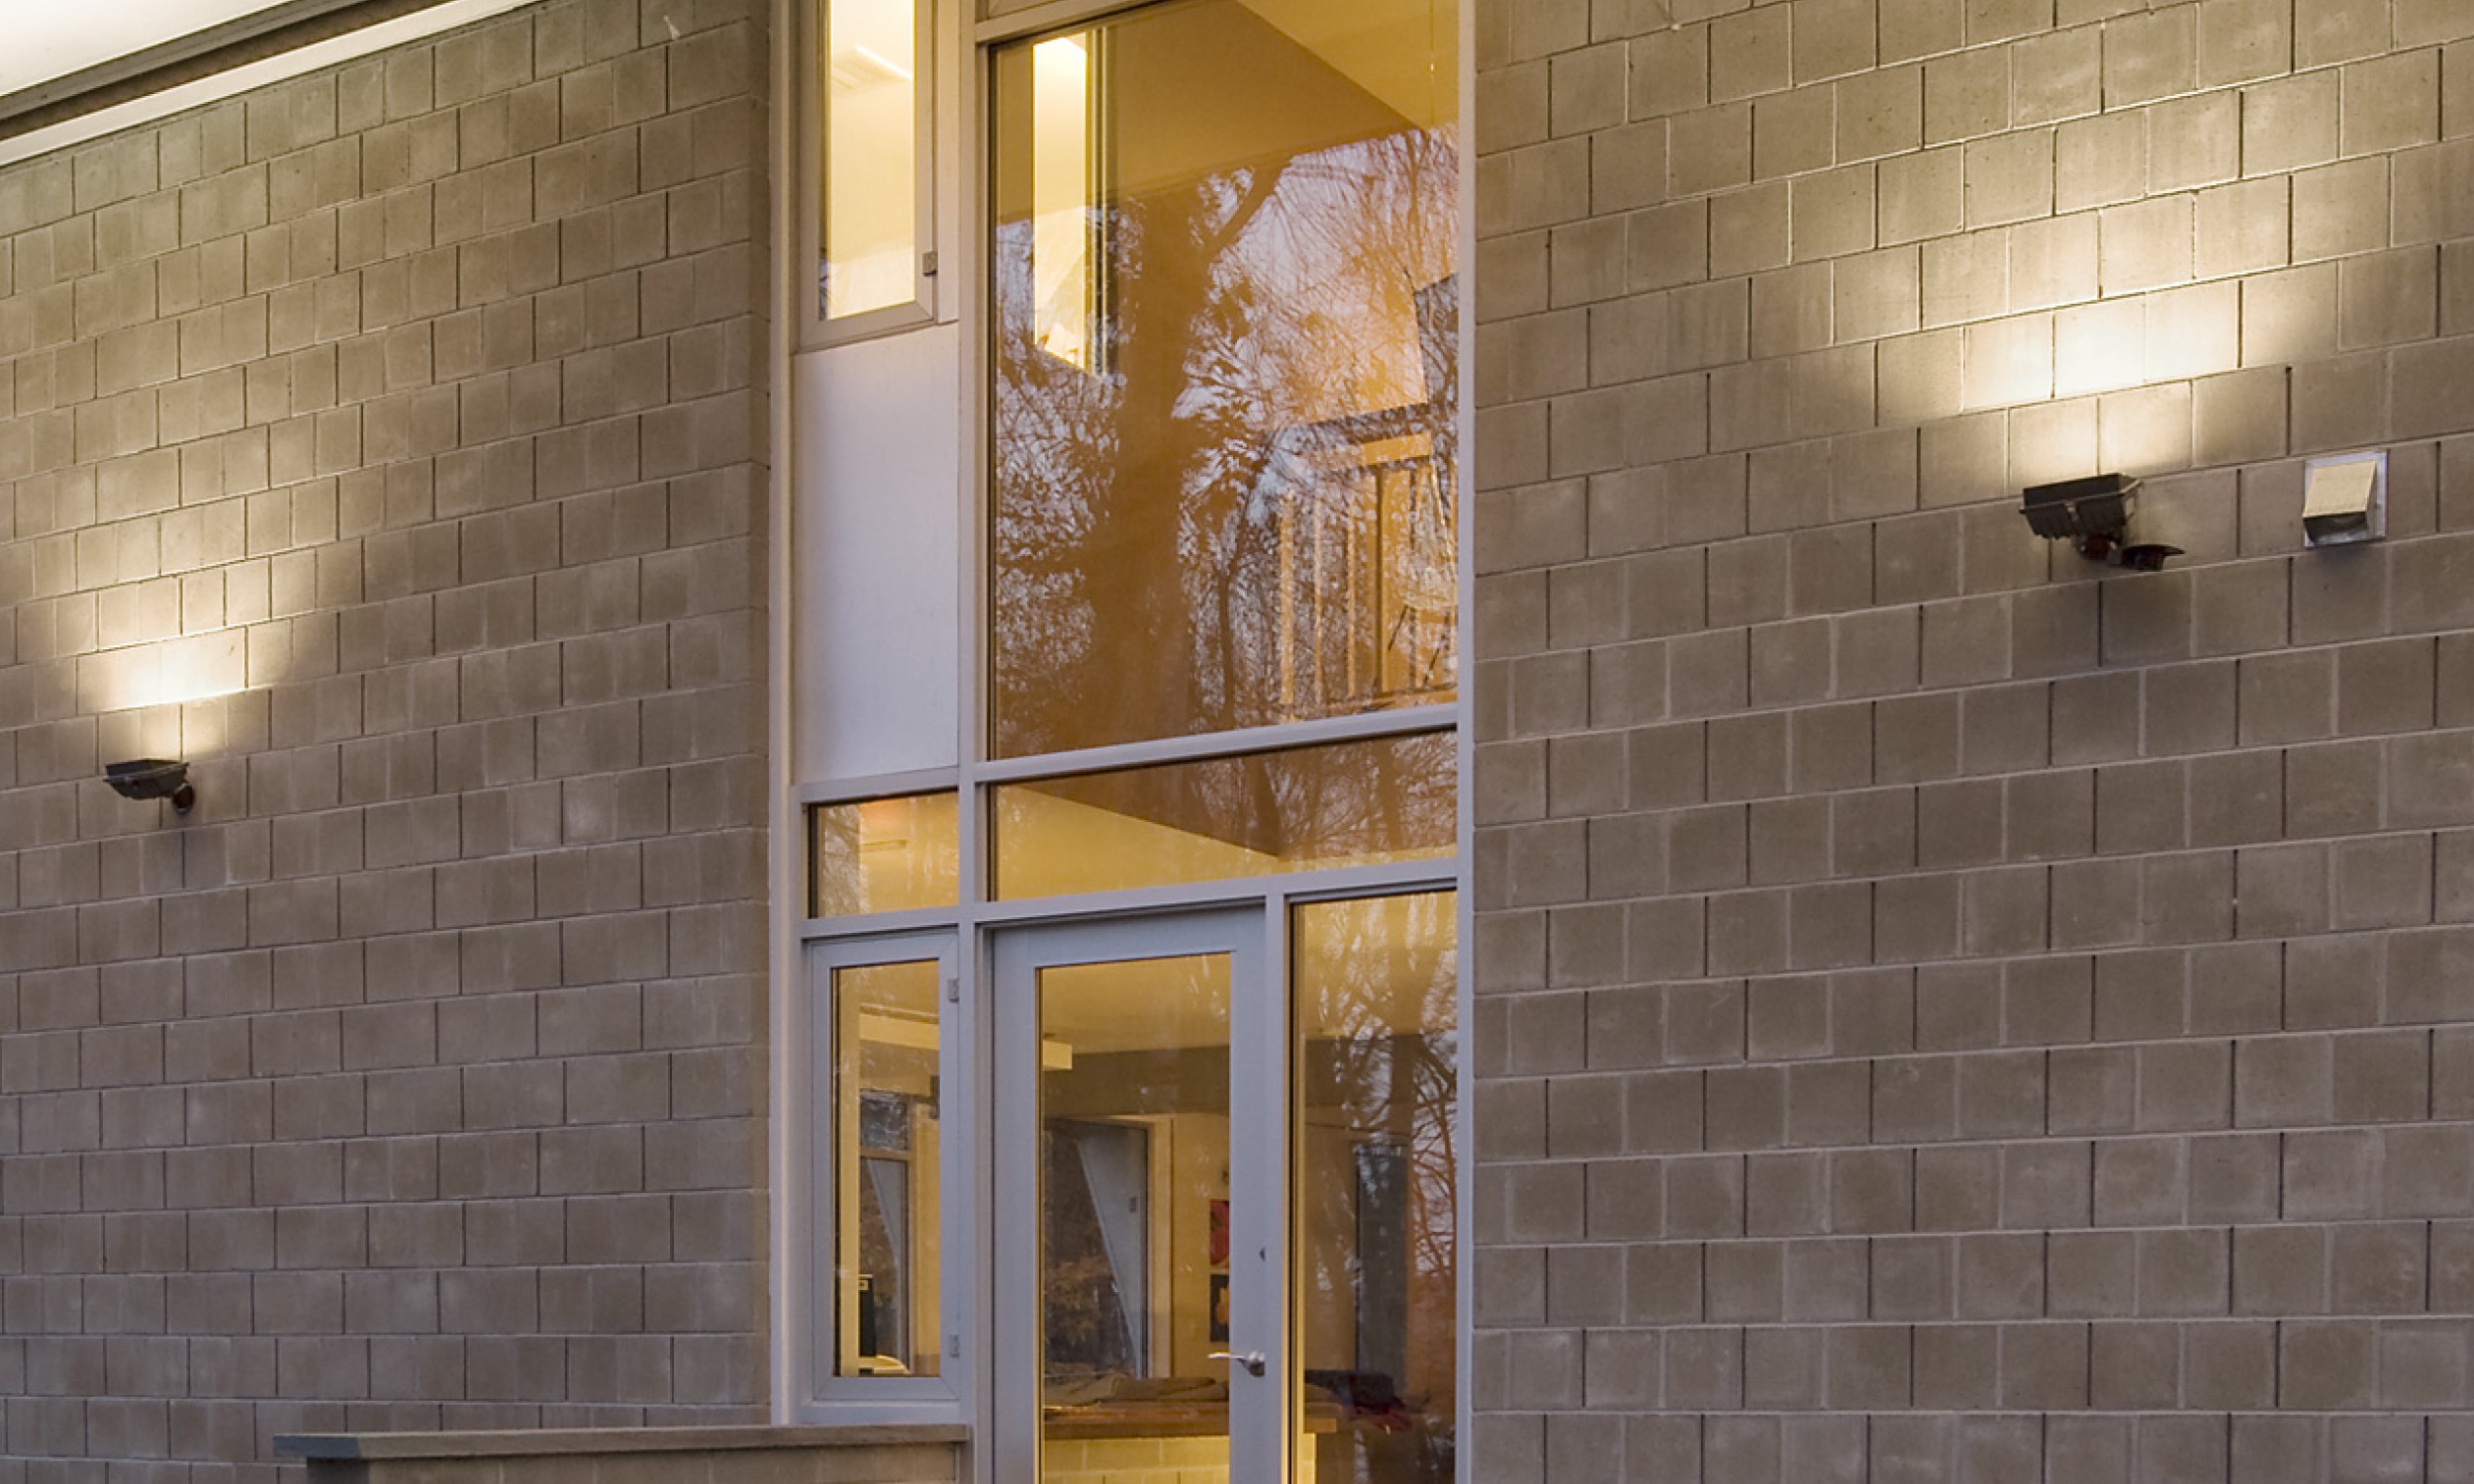 Entrance, Concrete blocks, Maine Architect, Storefront windows, uplights, concrete